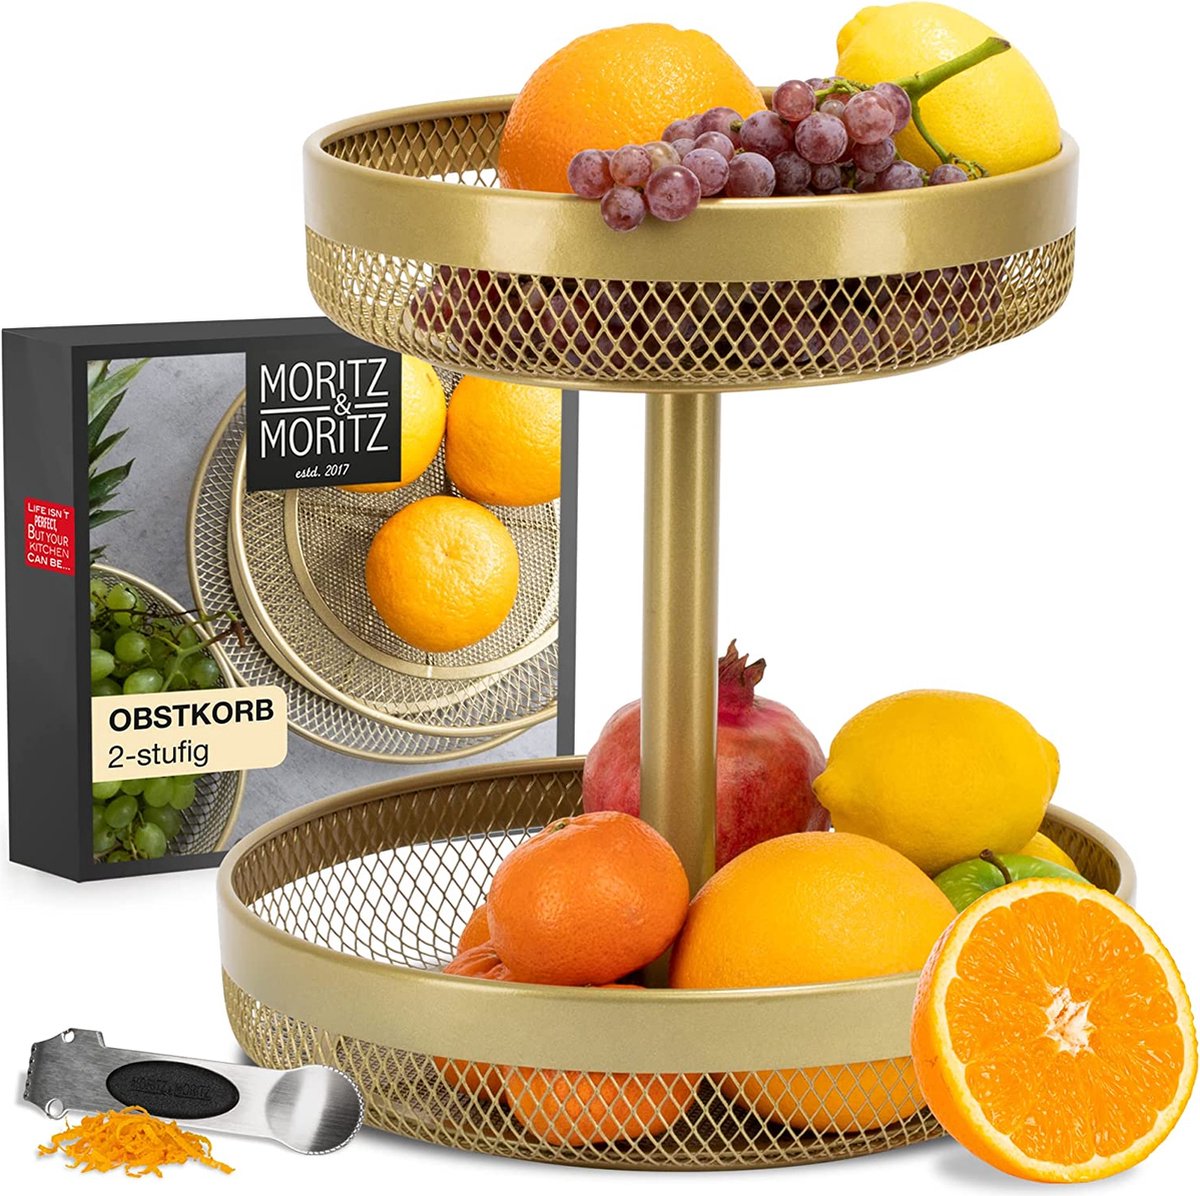 Moritz & Moritz Fruitetagère goud metaal - moderne fruitschaal goud - fruitmand goud voor het bewaren van fruit, groenten en brood